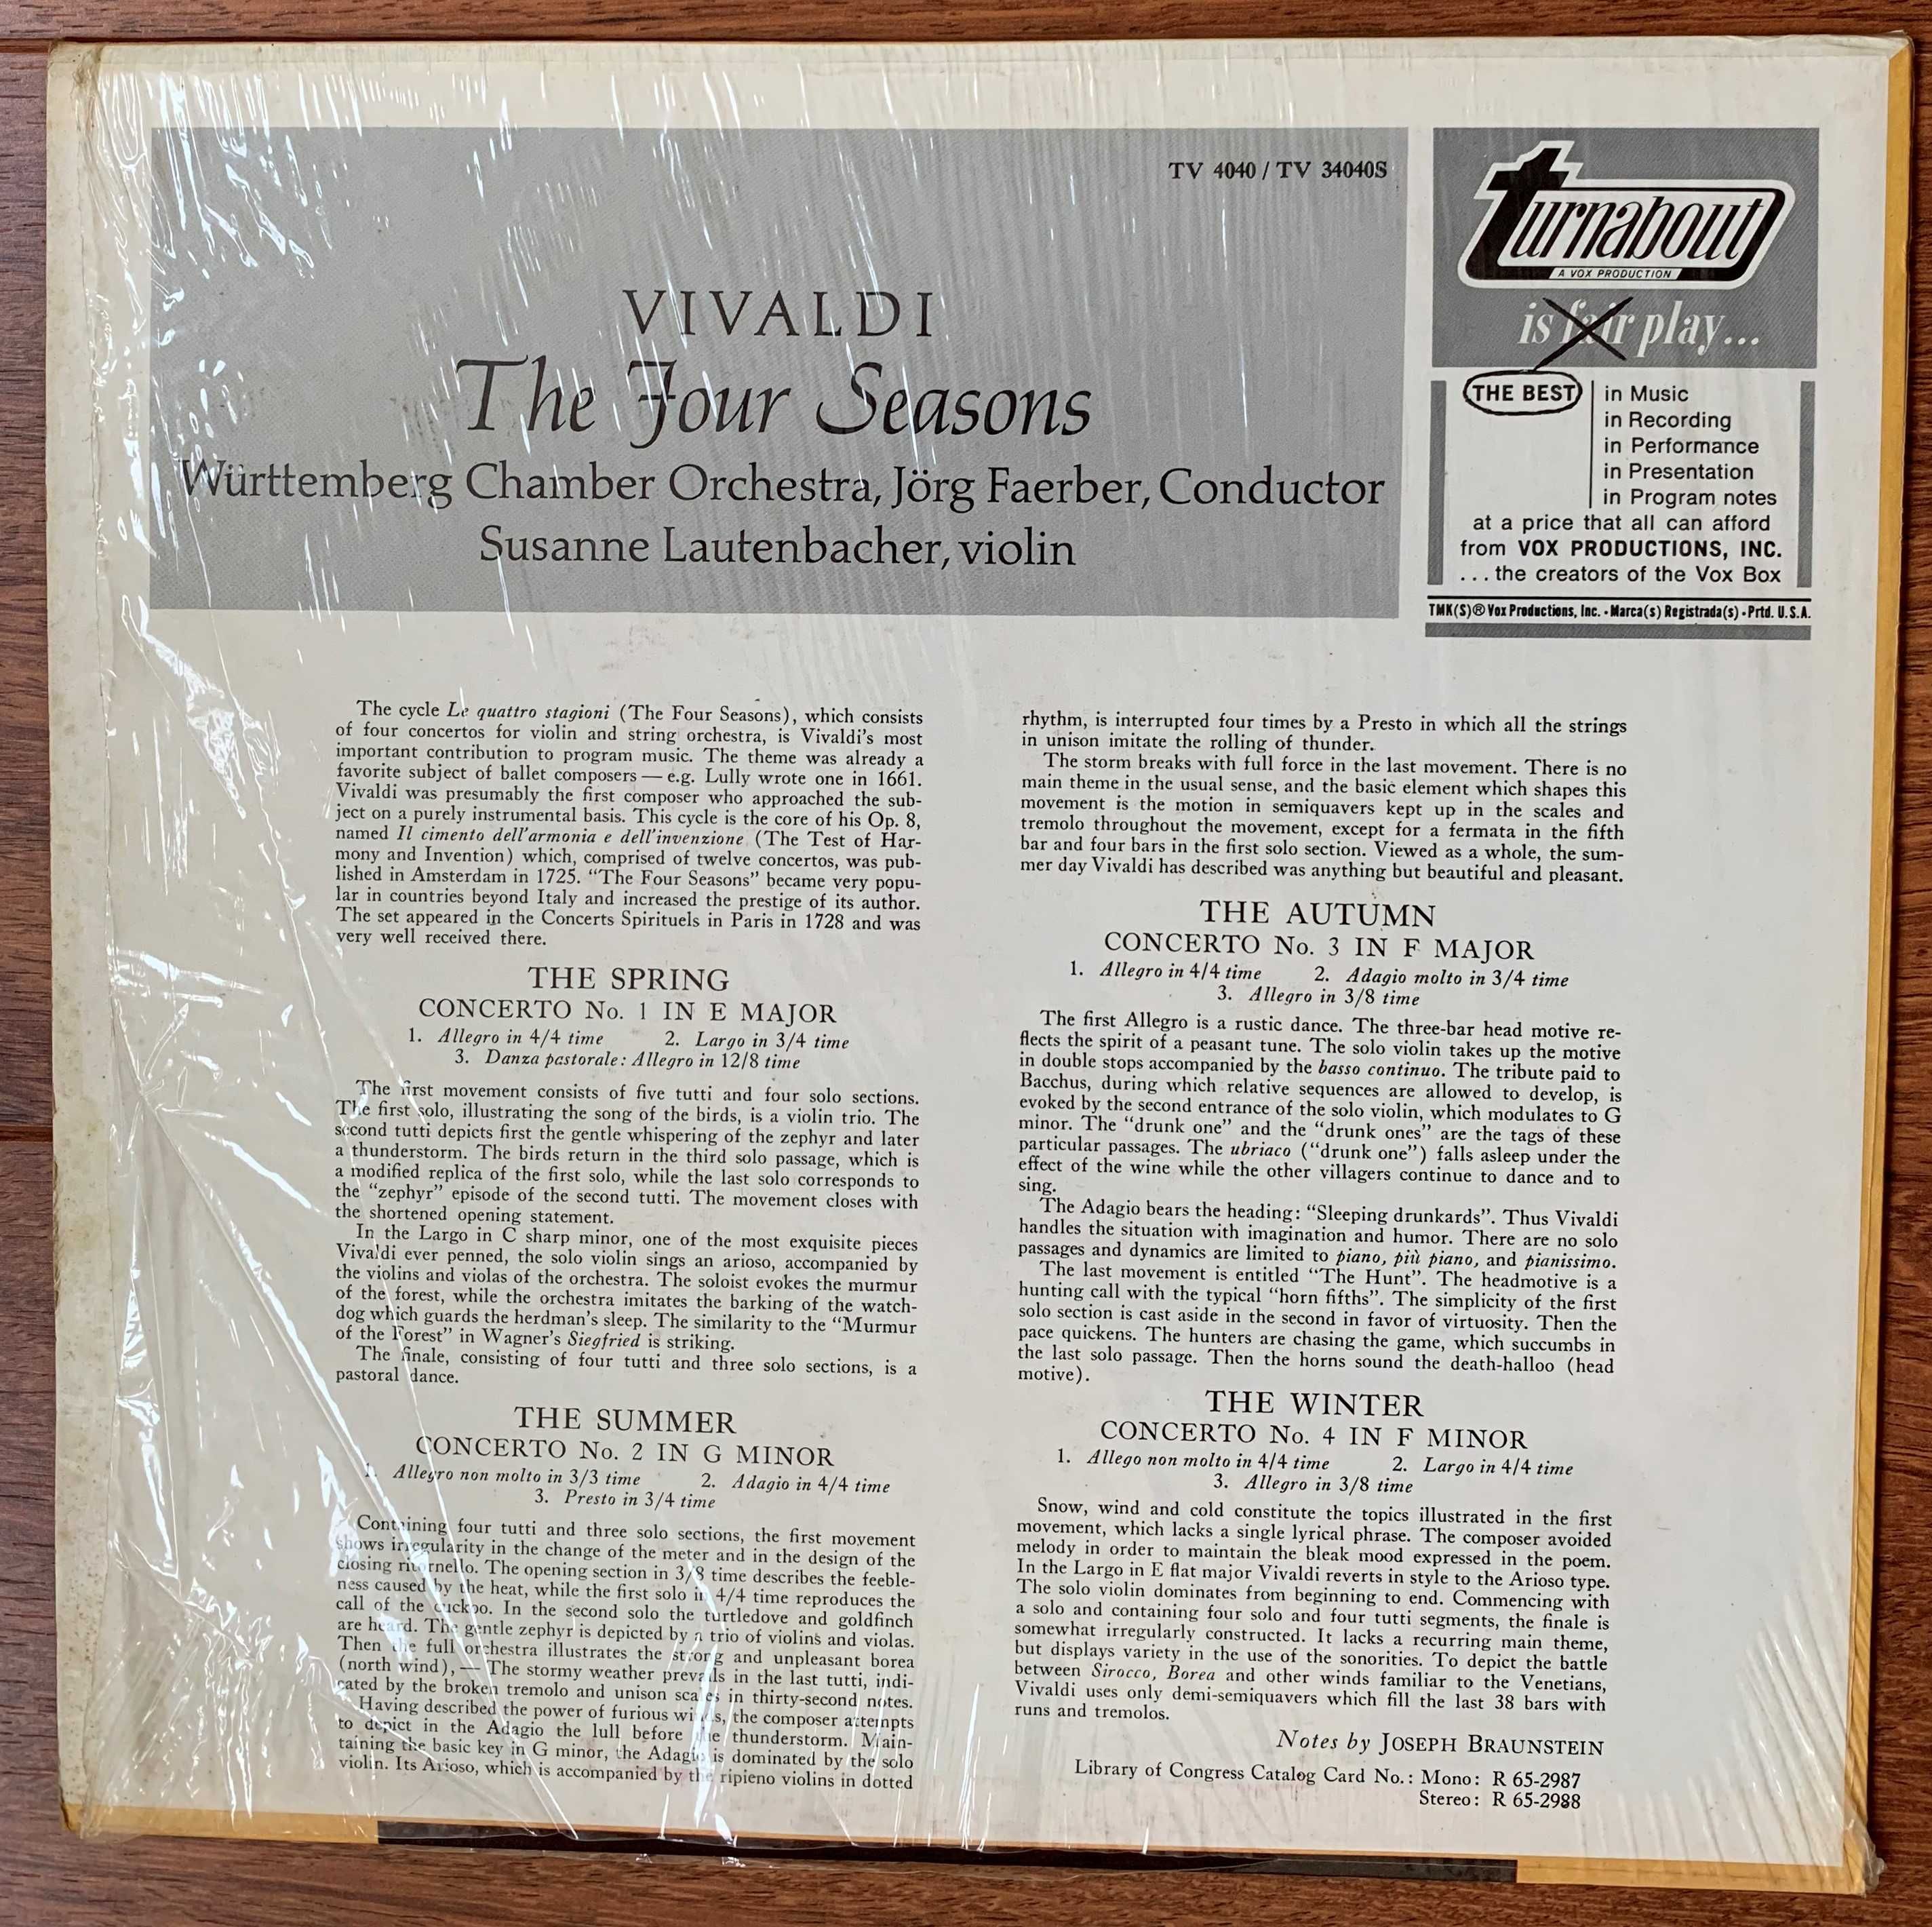 Discos de vinil - música clássica ( lote de 5 LP's)